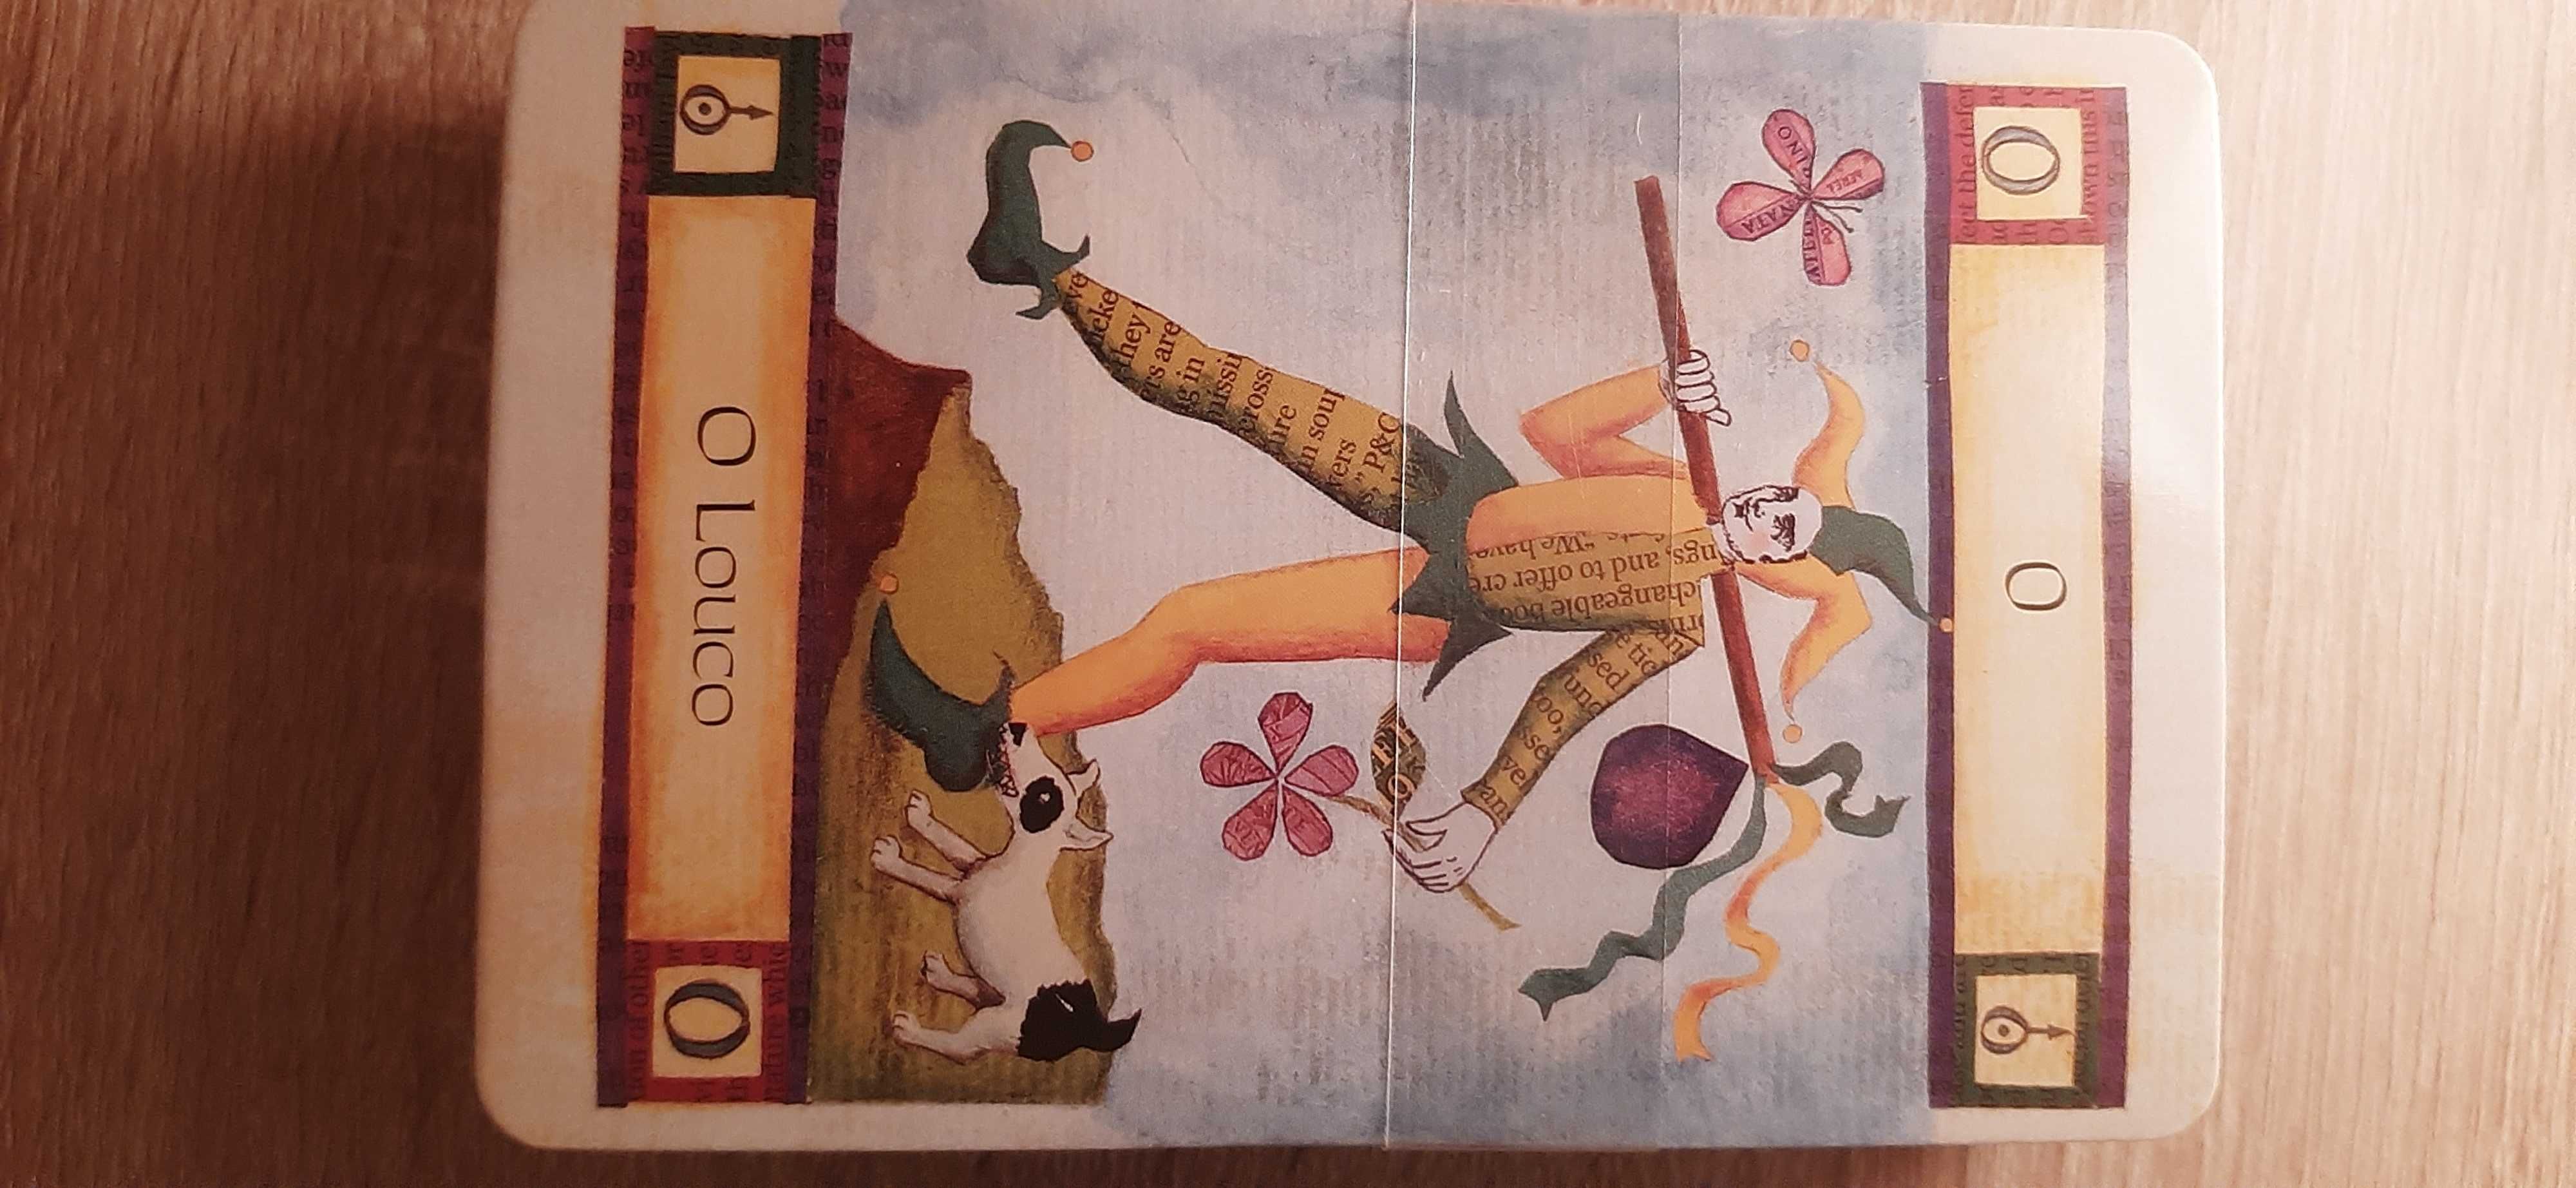 A magia do Tarot, caixa (embalagem) livro e baralho